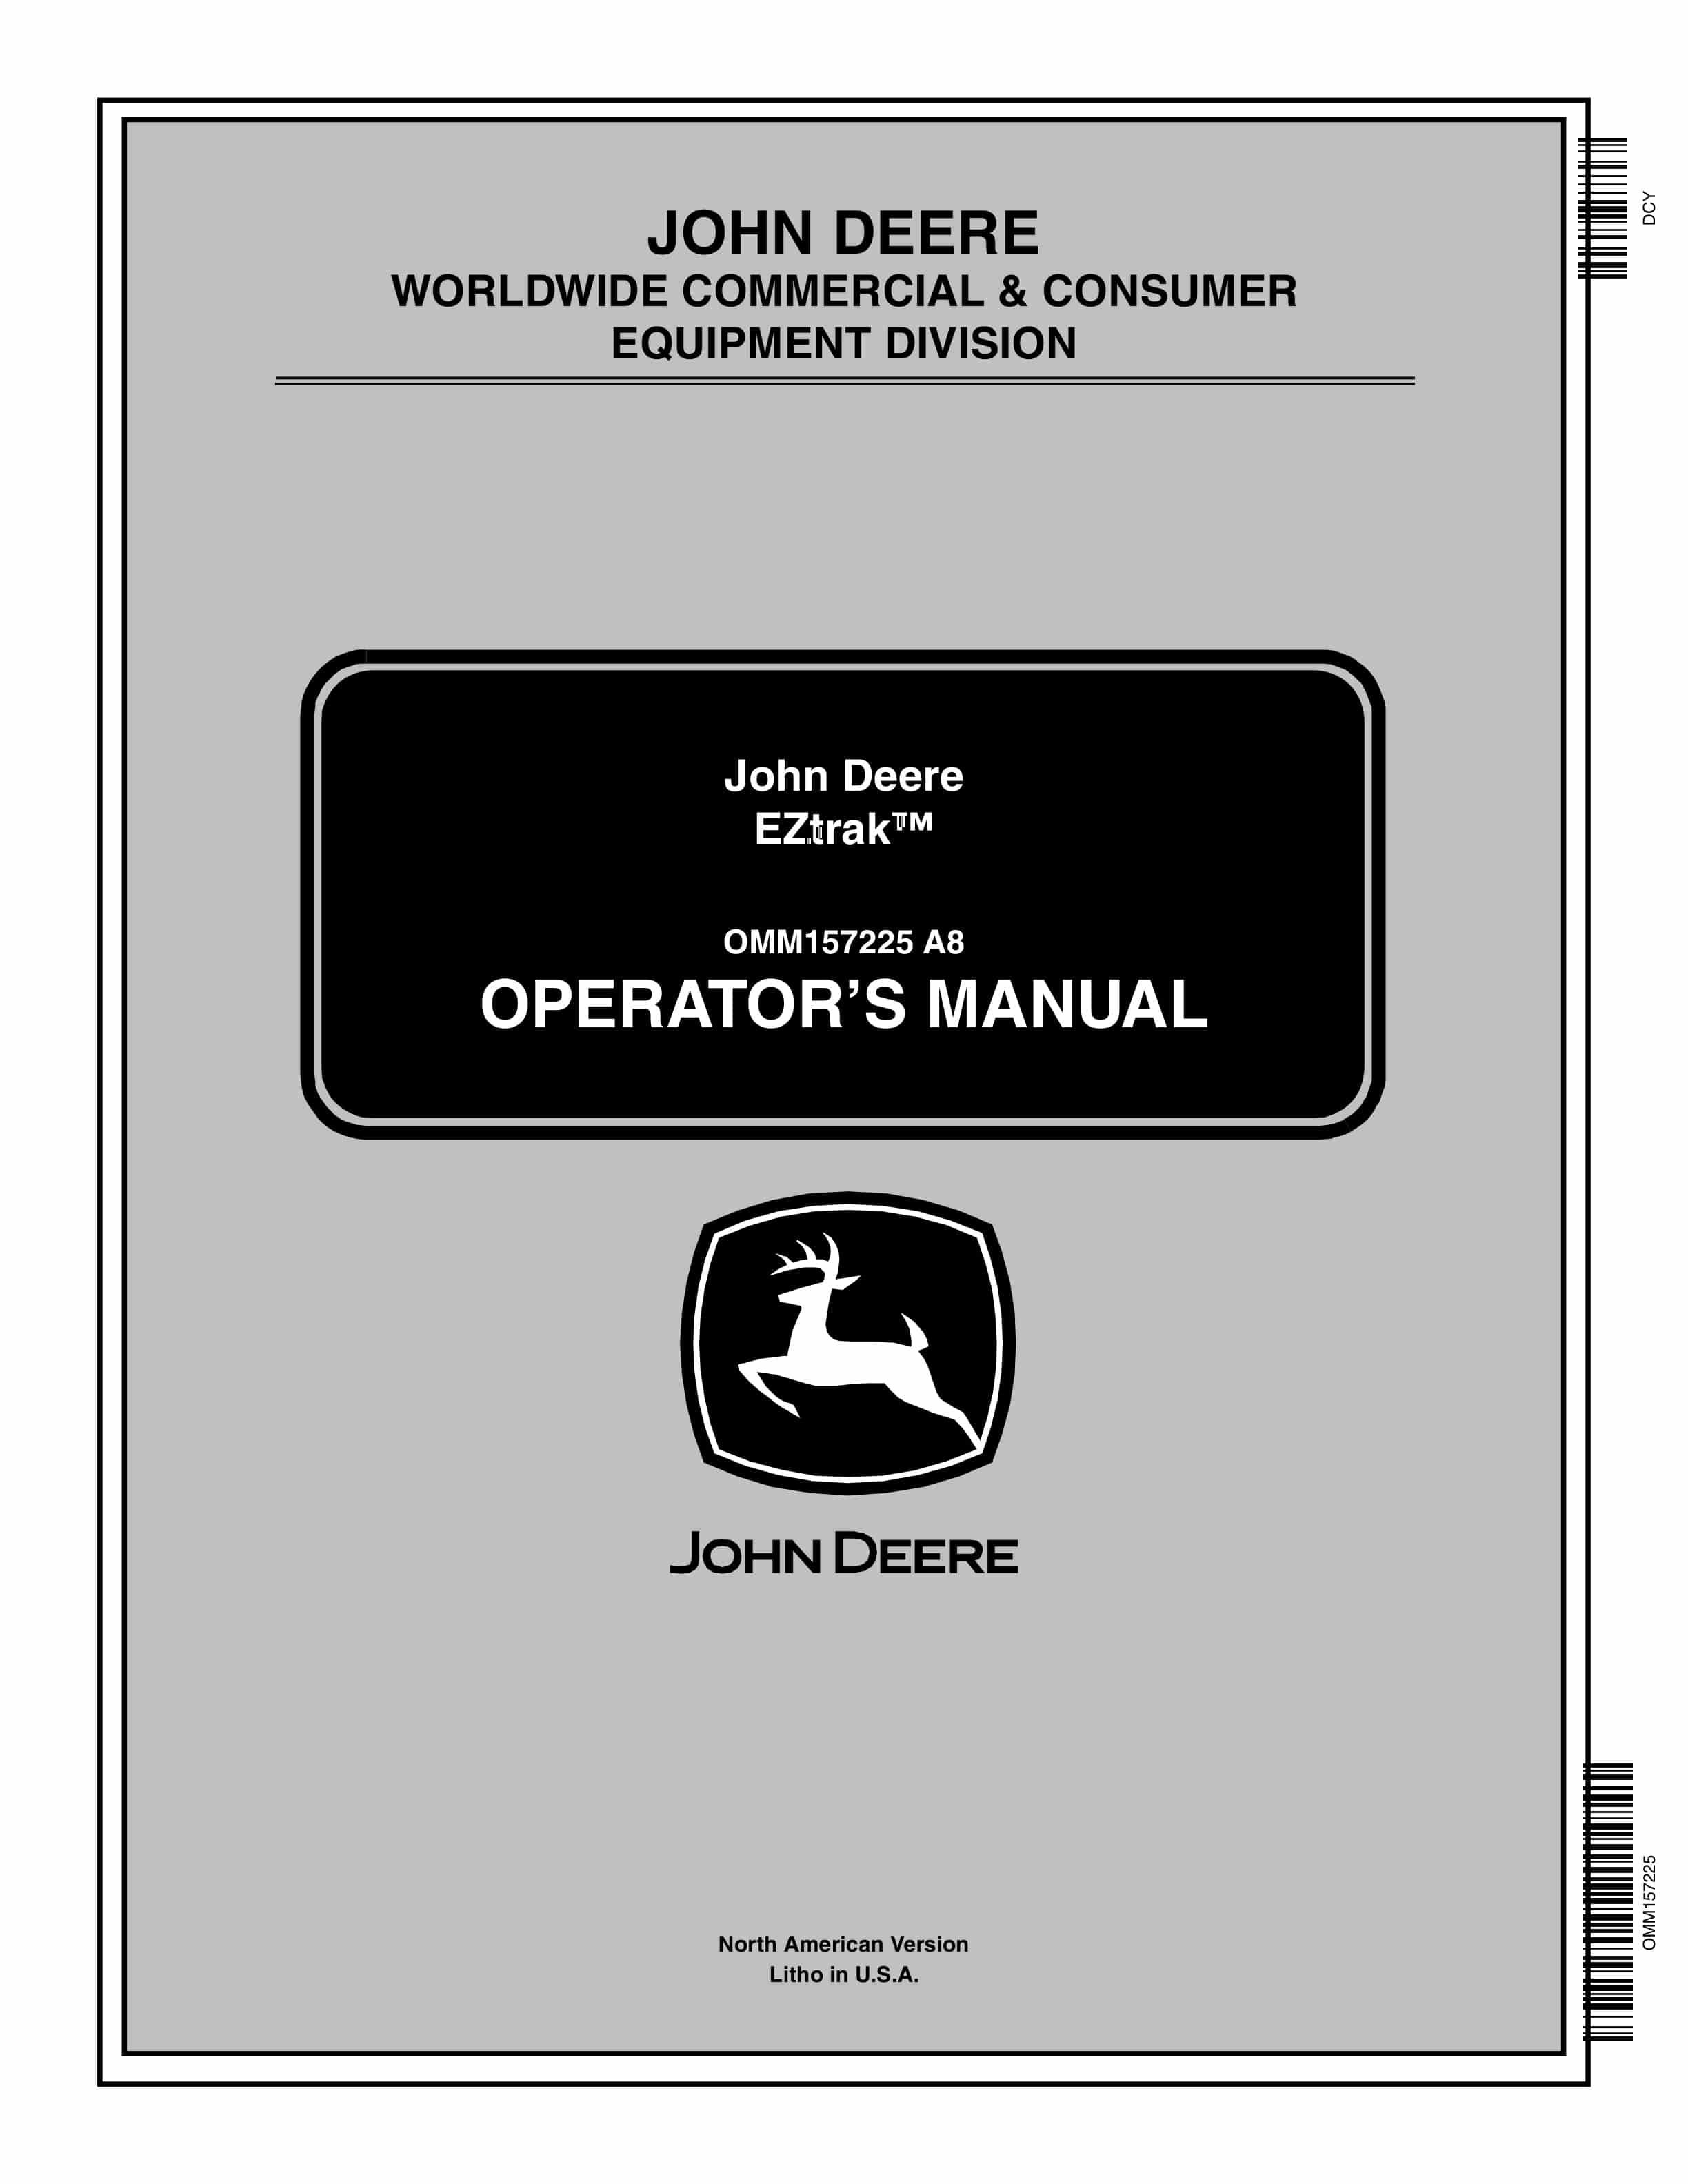 John Deere EZtrak Operator Manual OMM157225 1